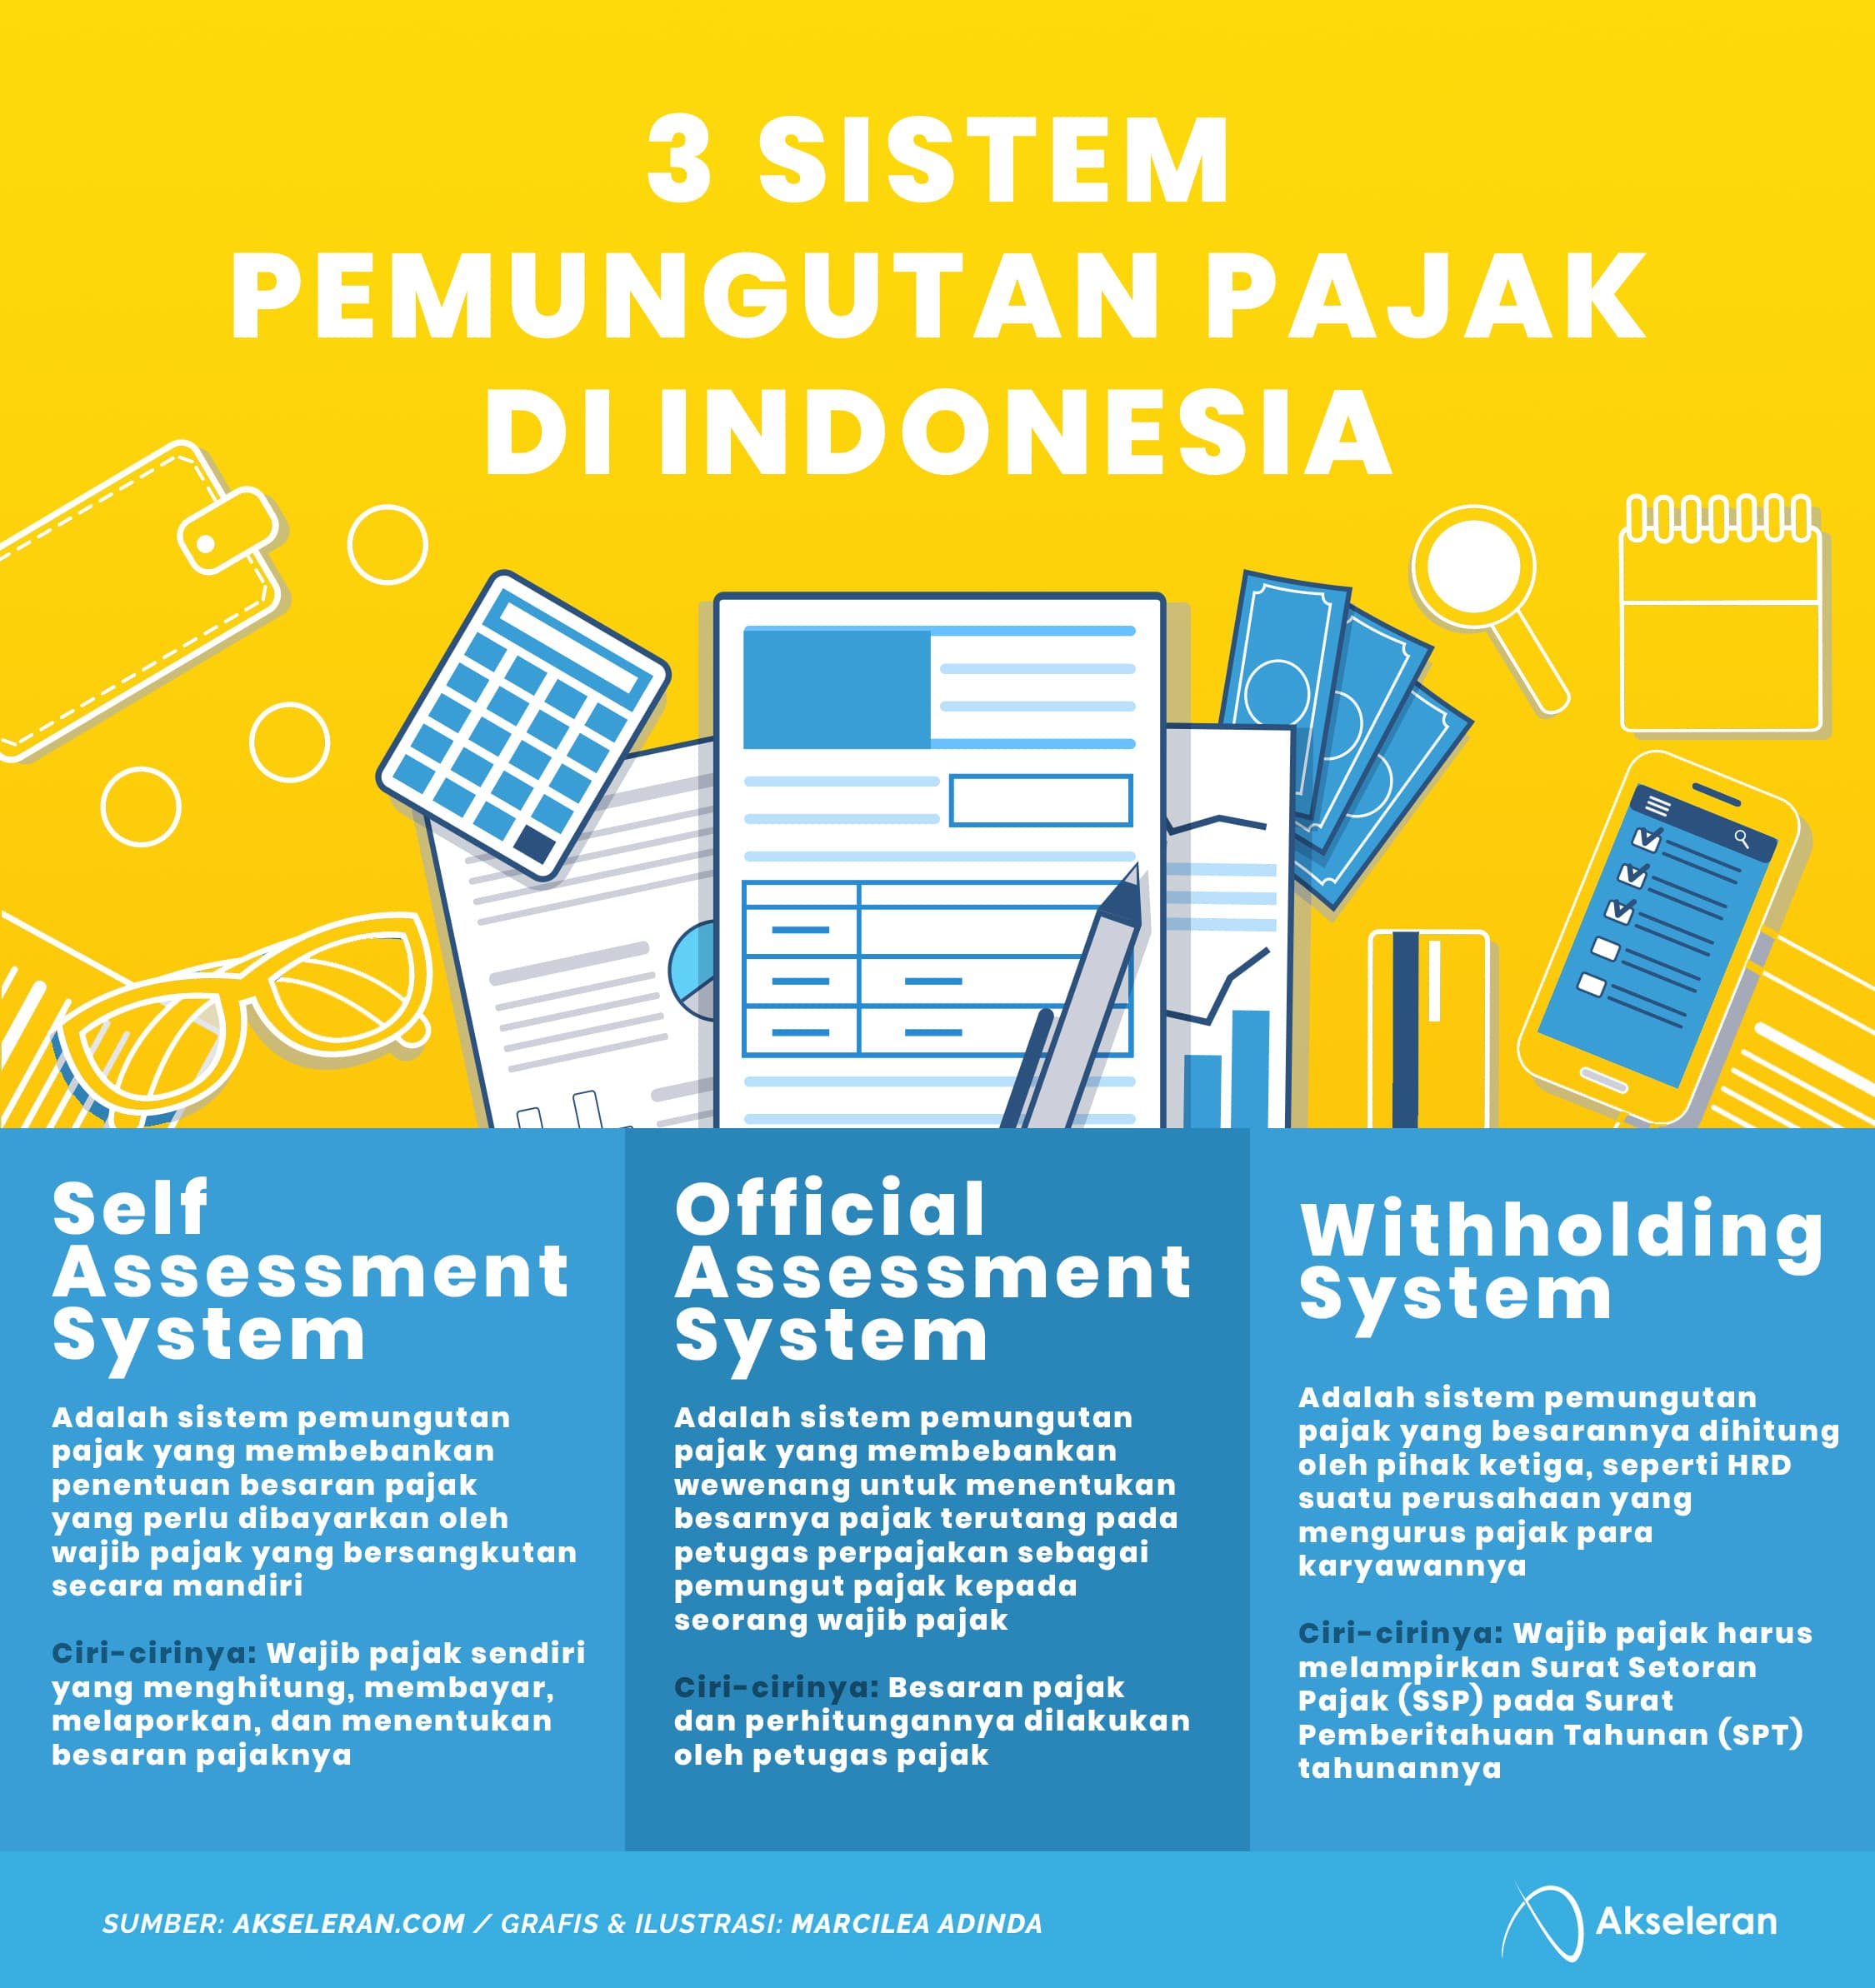 3 Macam Sistem Pemungutan Pajak Di Indonesia